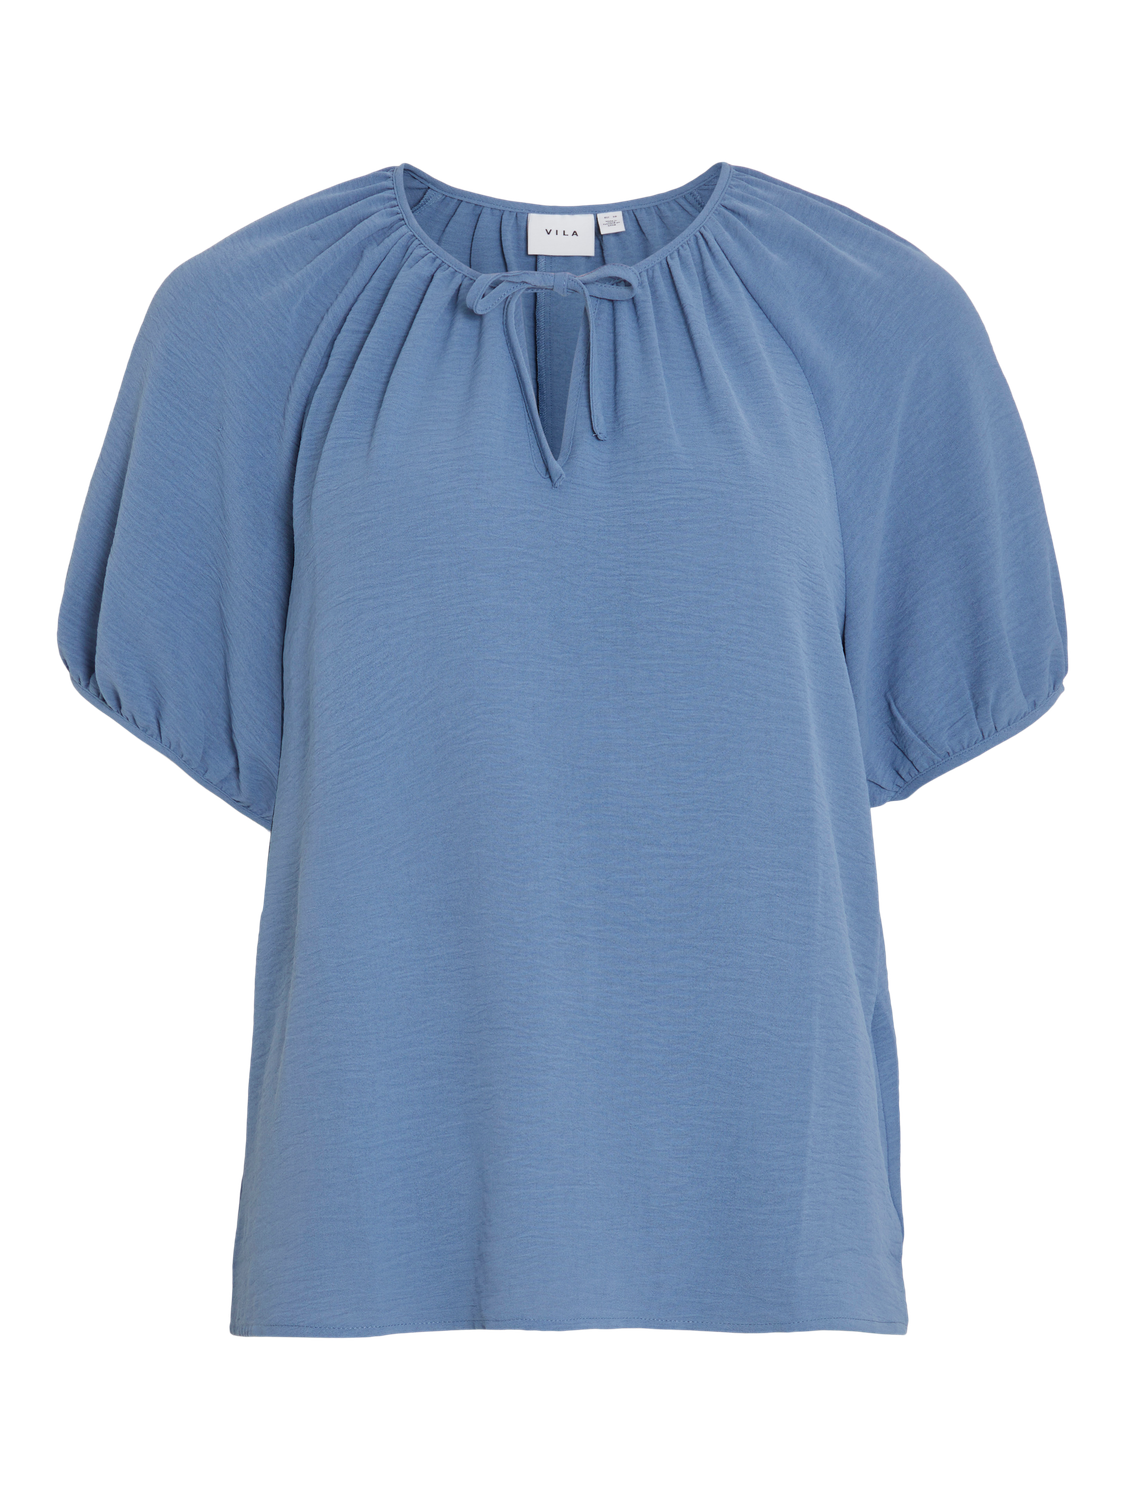 VINOVA T-Shirts & Tops - Coronet Blue